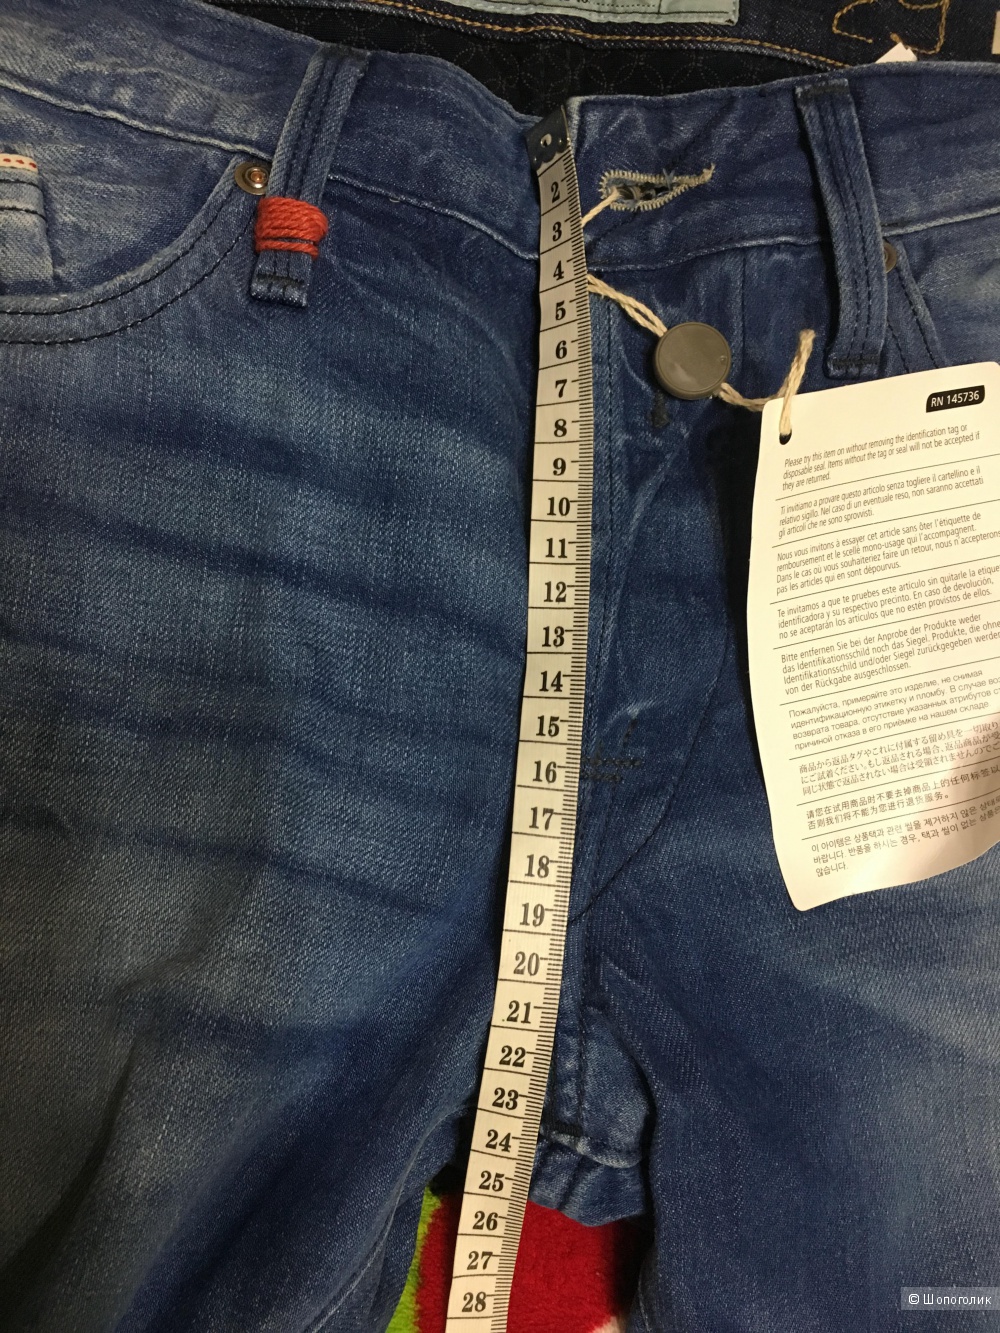 Мужские джинсы REPLAY, 29W-34L (Размер Джинсов).